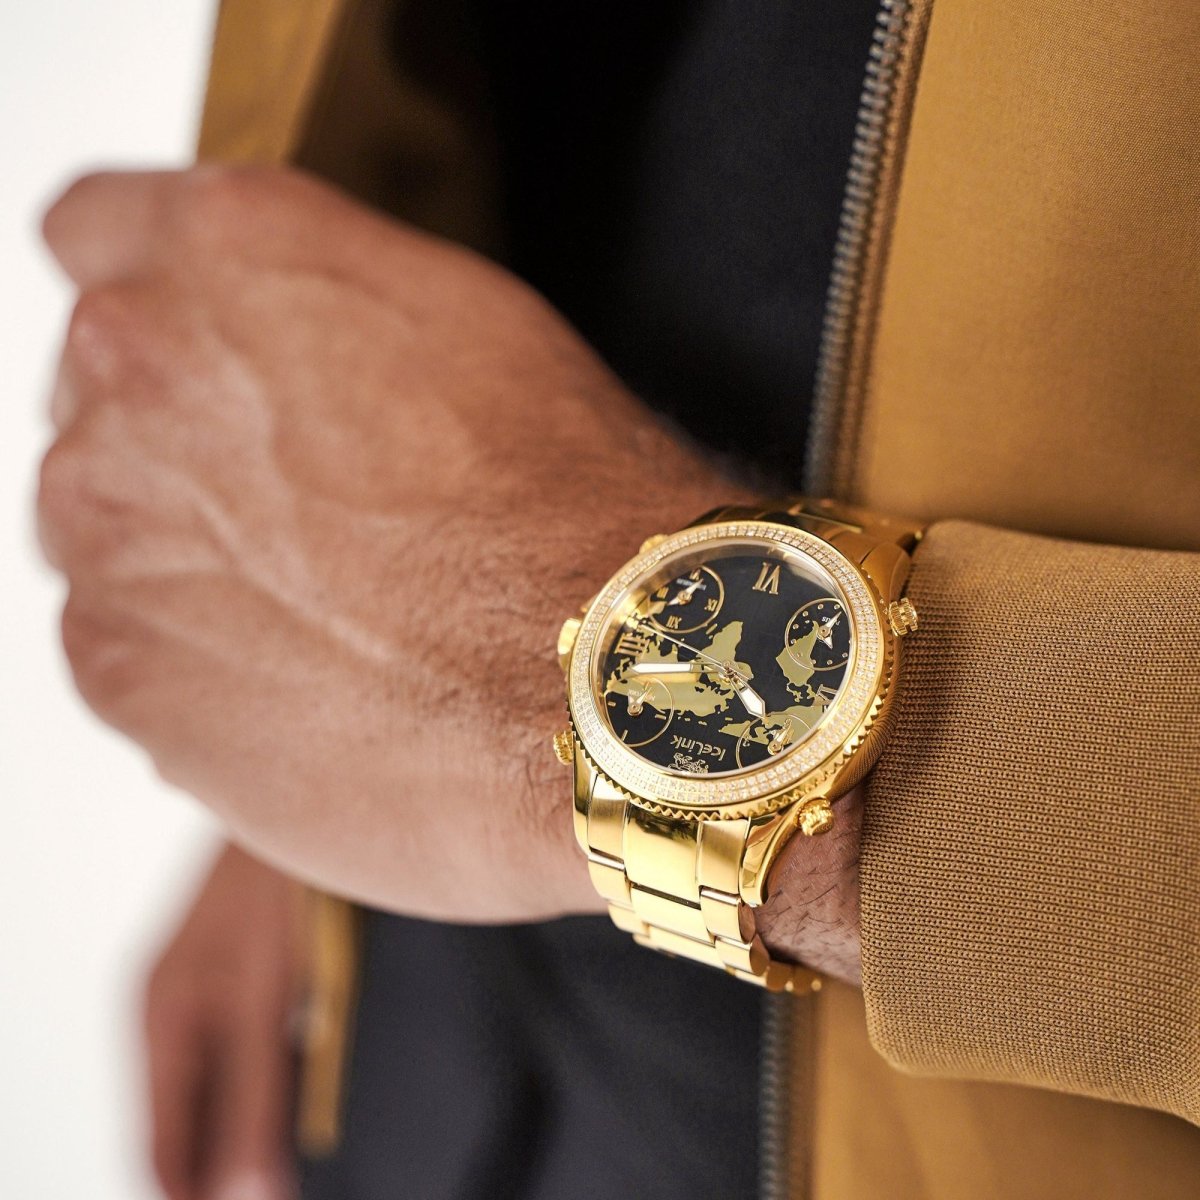 アヴァランチ AVALANCHE アイスリンク腕時計 ICE LINK 腕時計(アナログ) 超格安セール